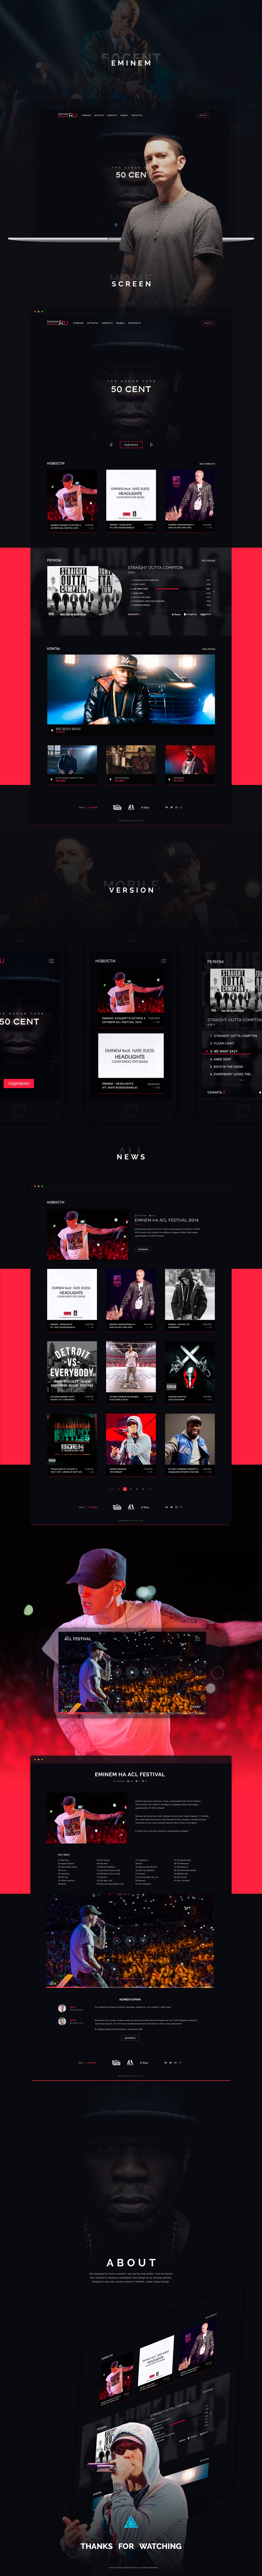 Eminem50Cent Website Redesign